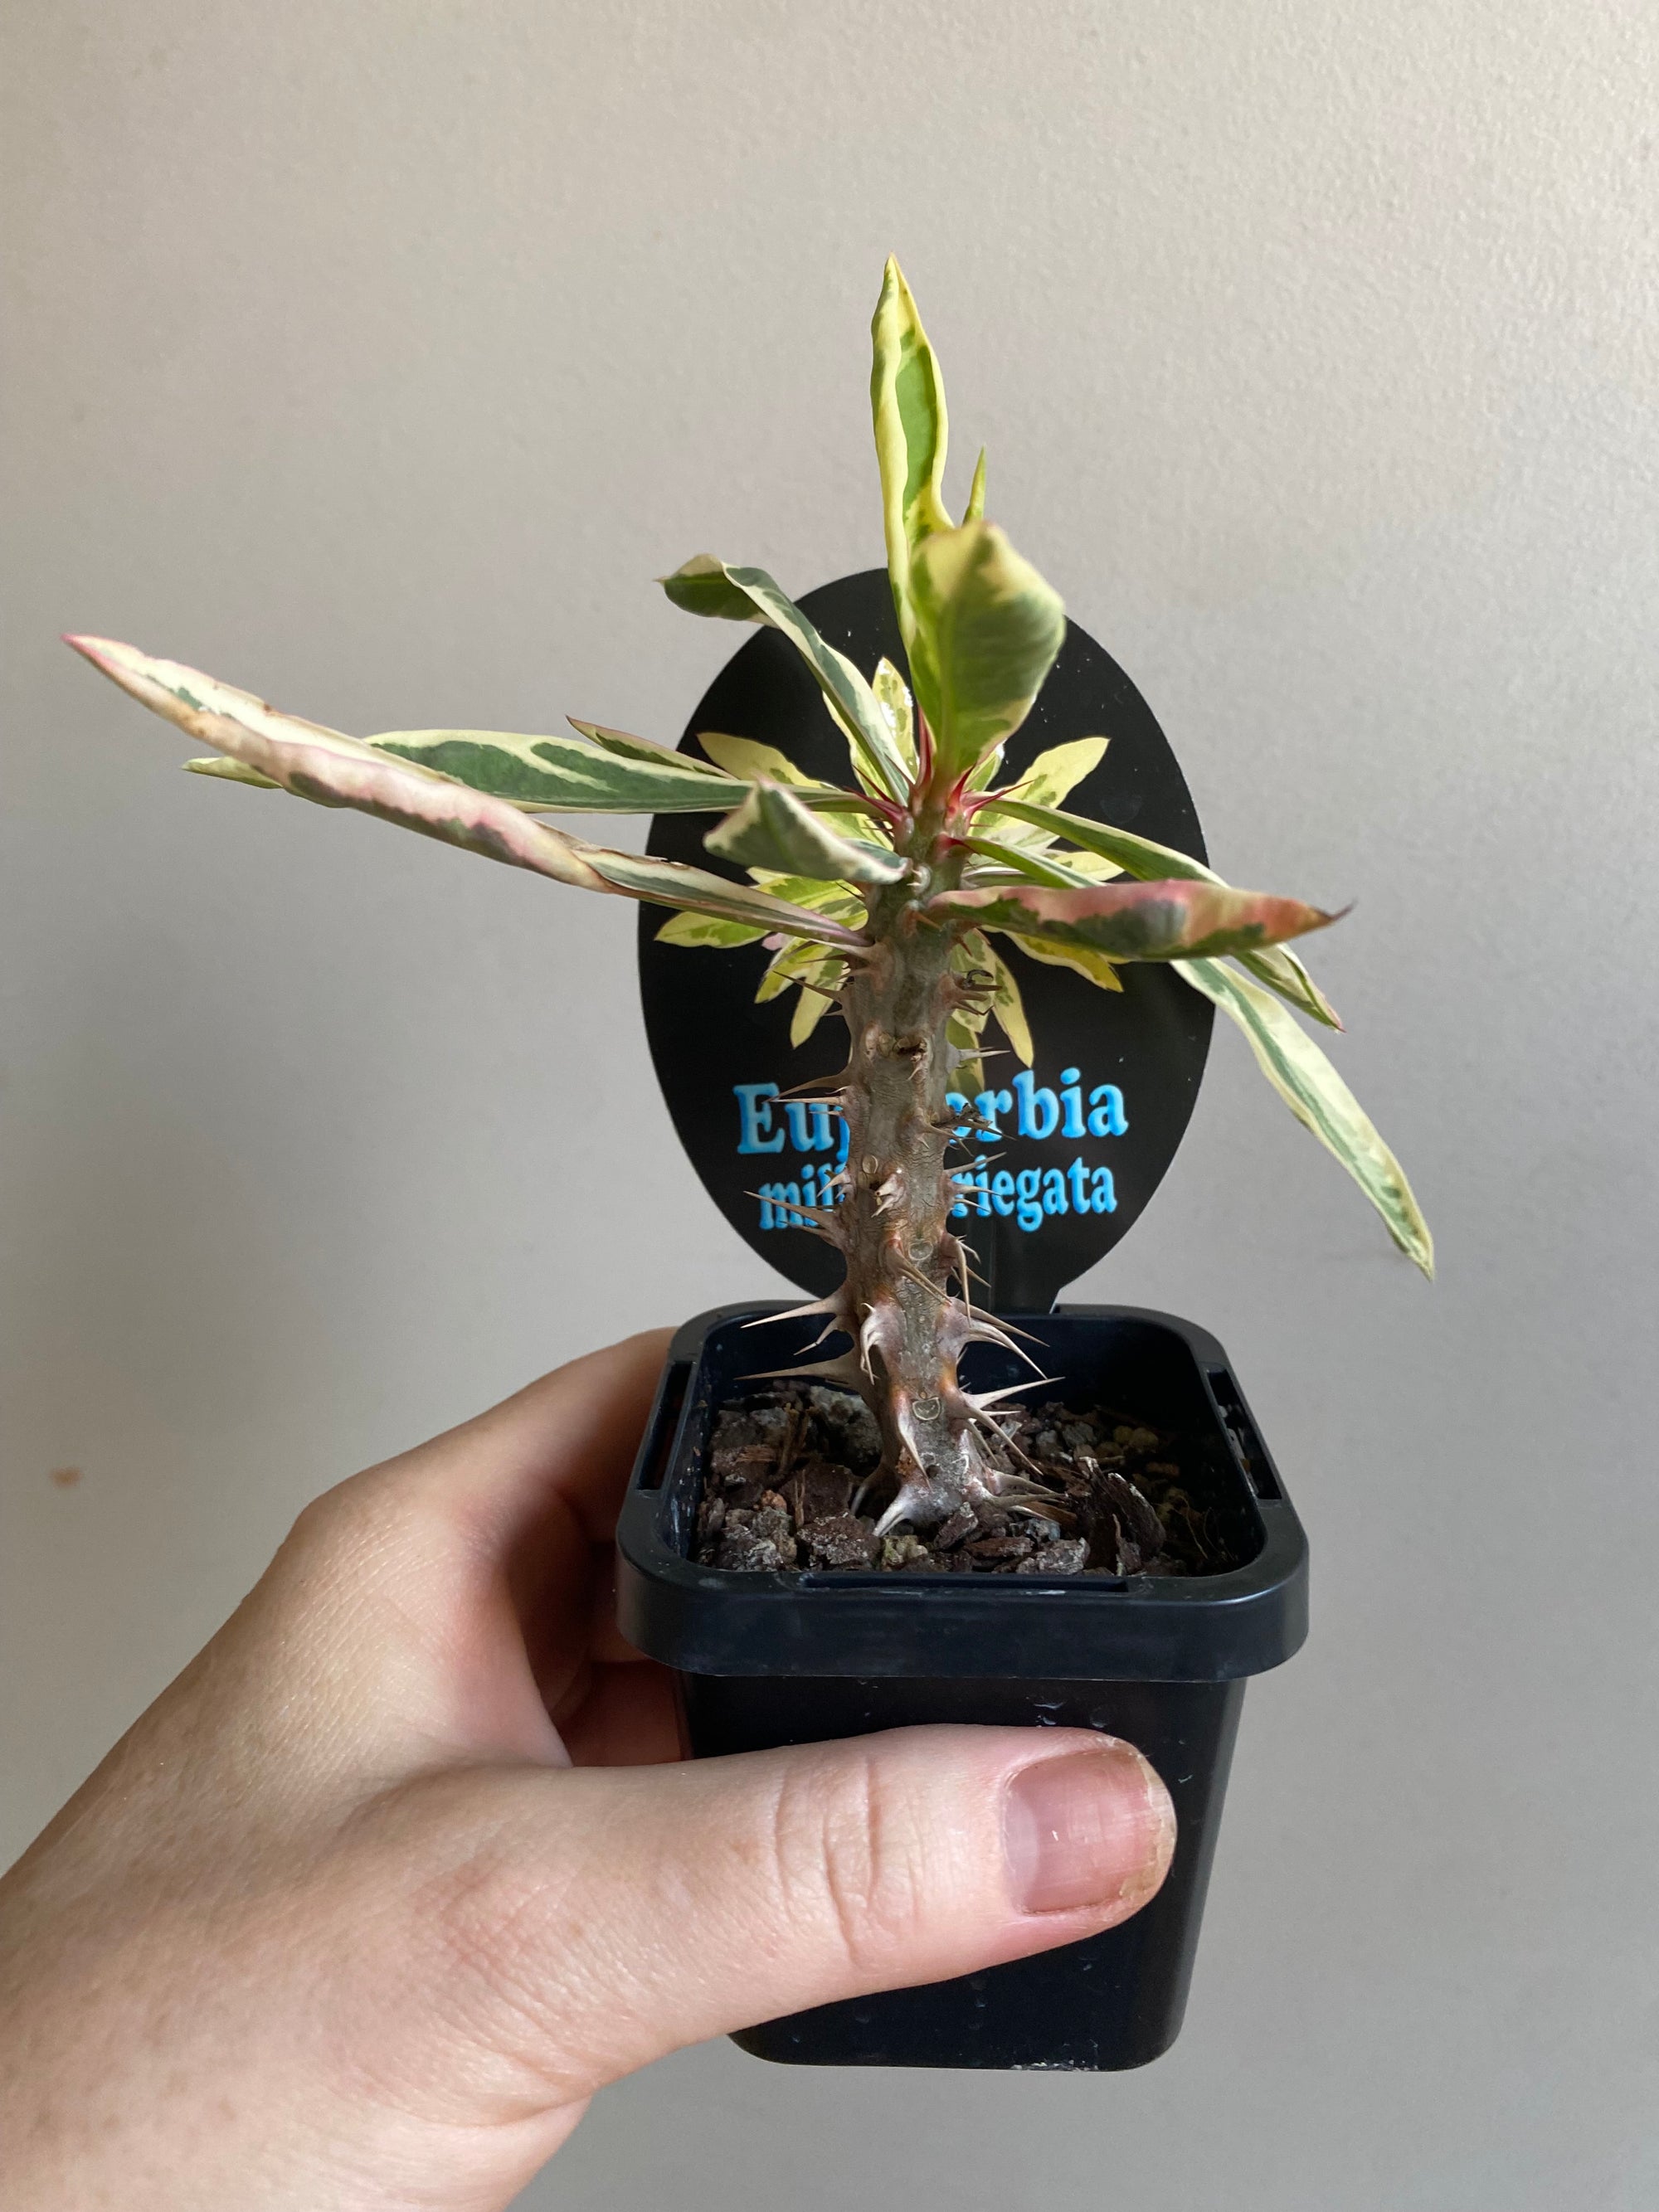 Euphorbia millii 'Variegata'